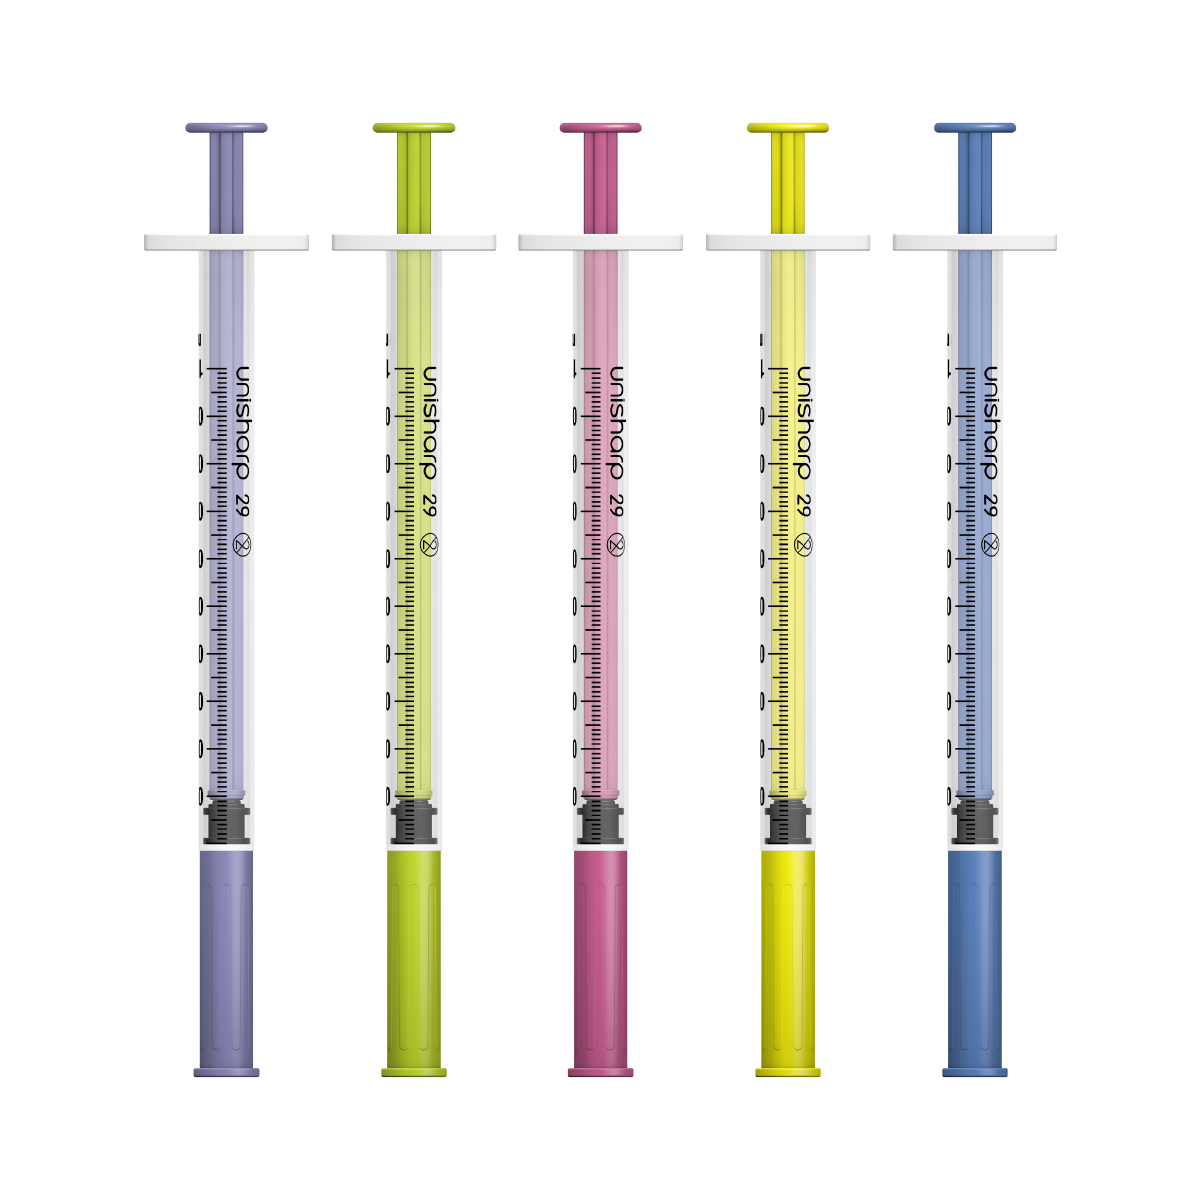 Unisharp 1ml 29G Fixed Needle Syringe (Australia)